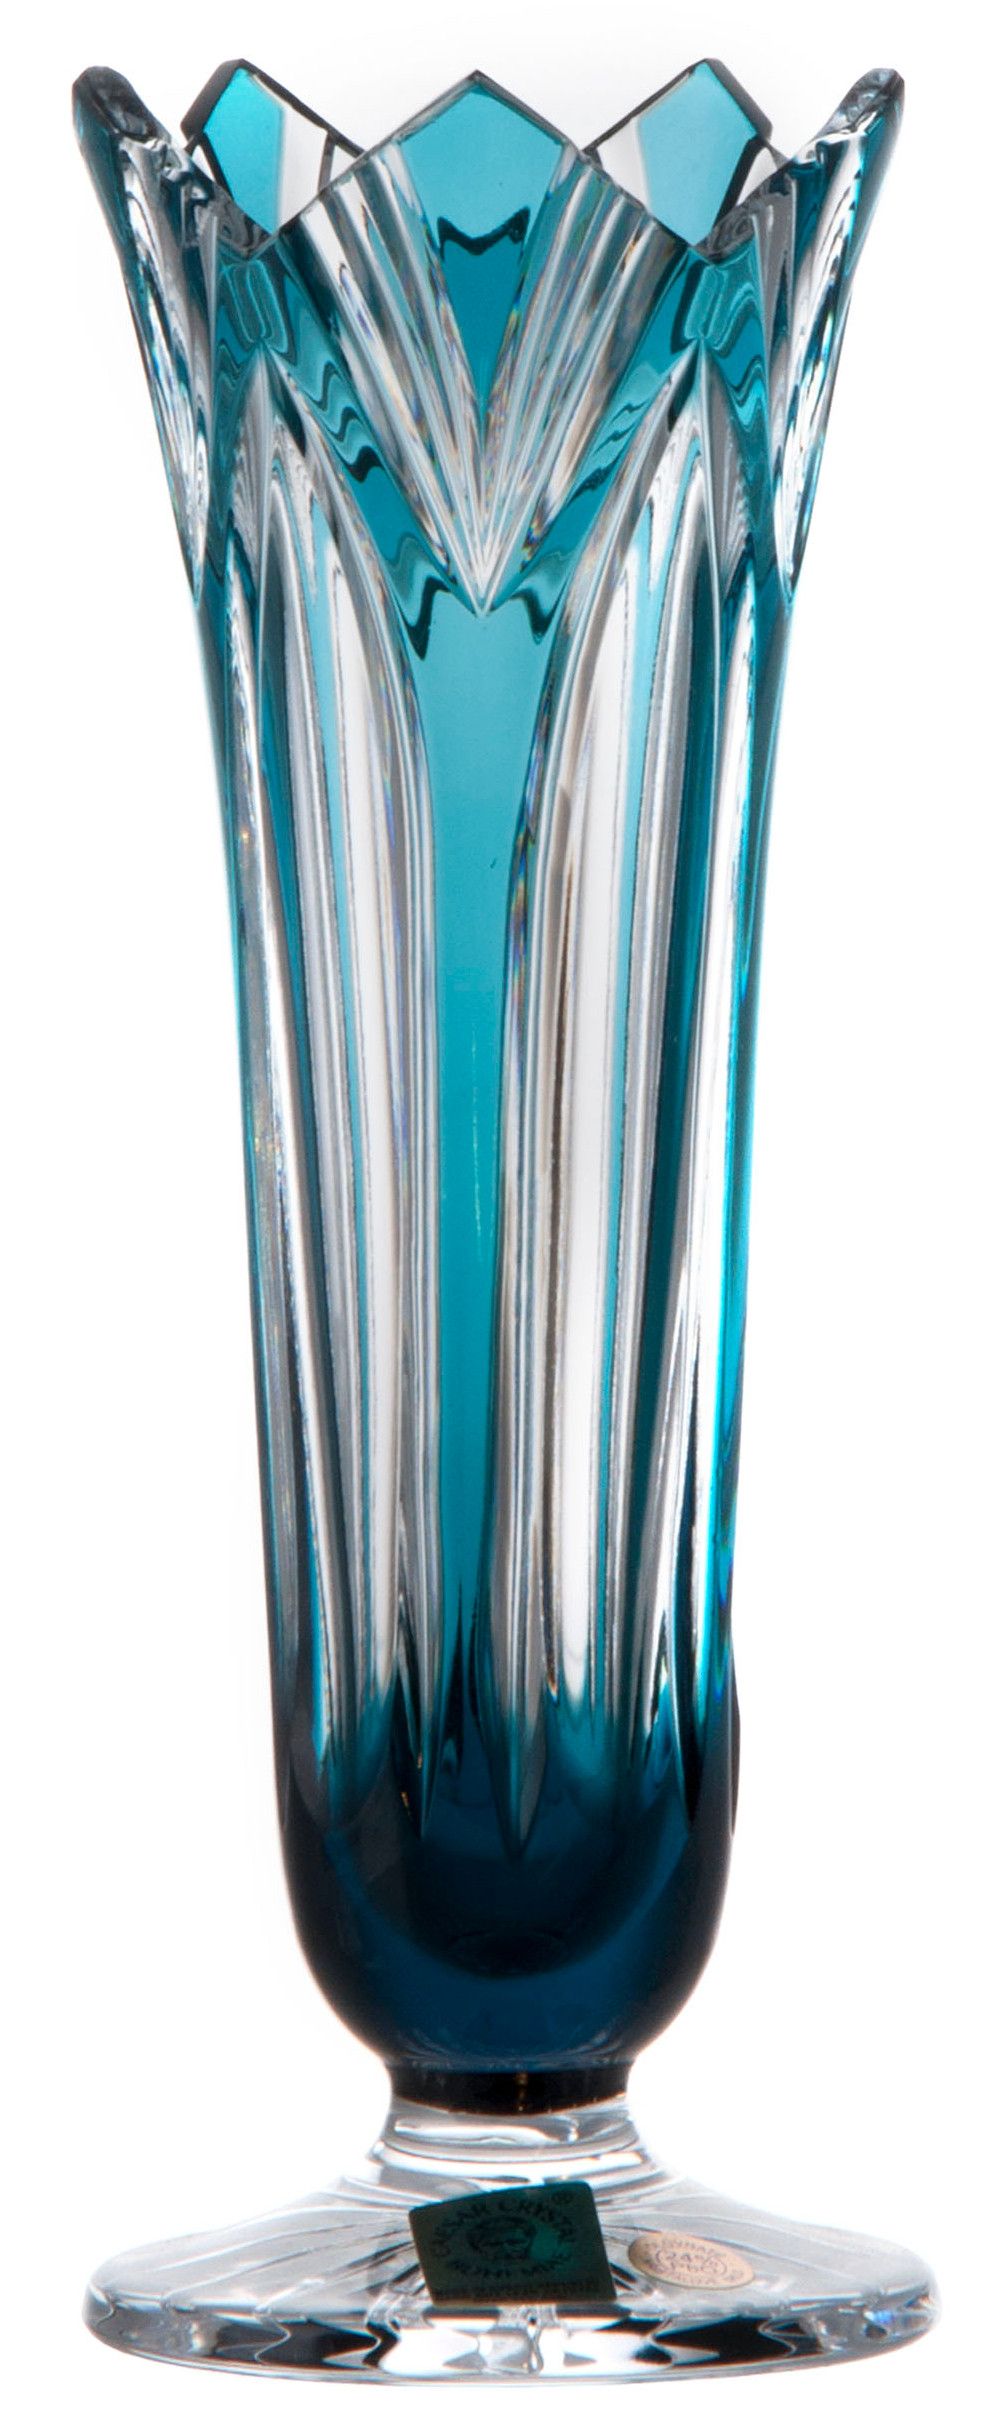 Krištáľová váza Lotos, farba azúrová, výška 175 mm